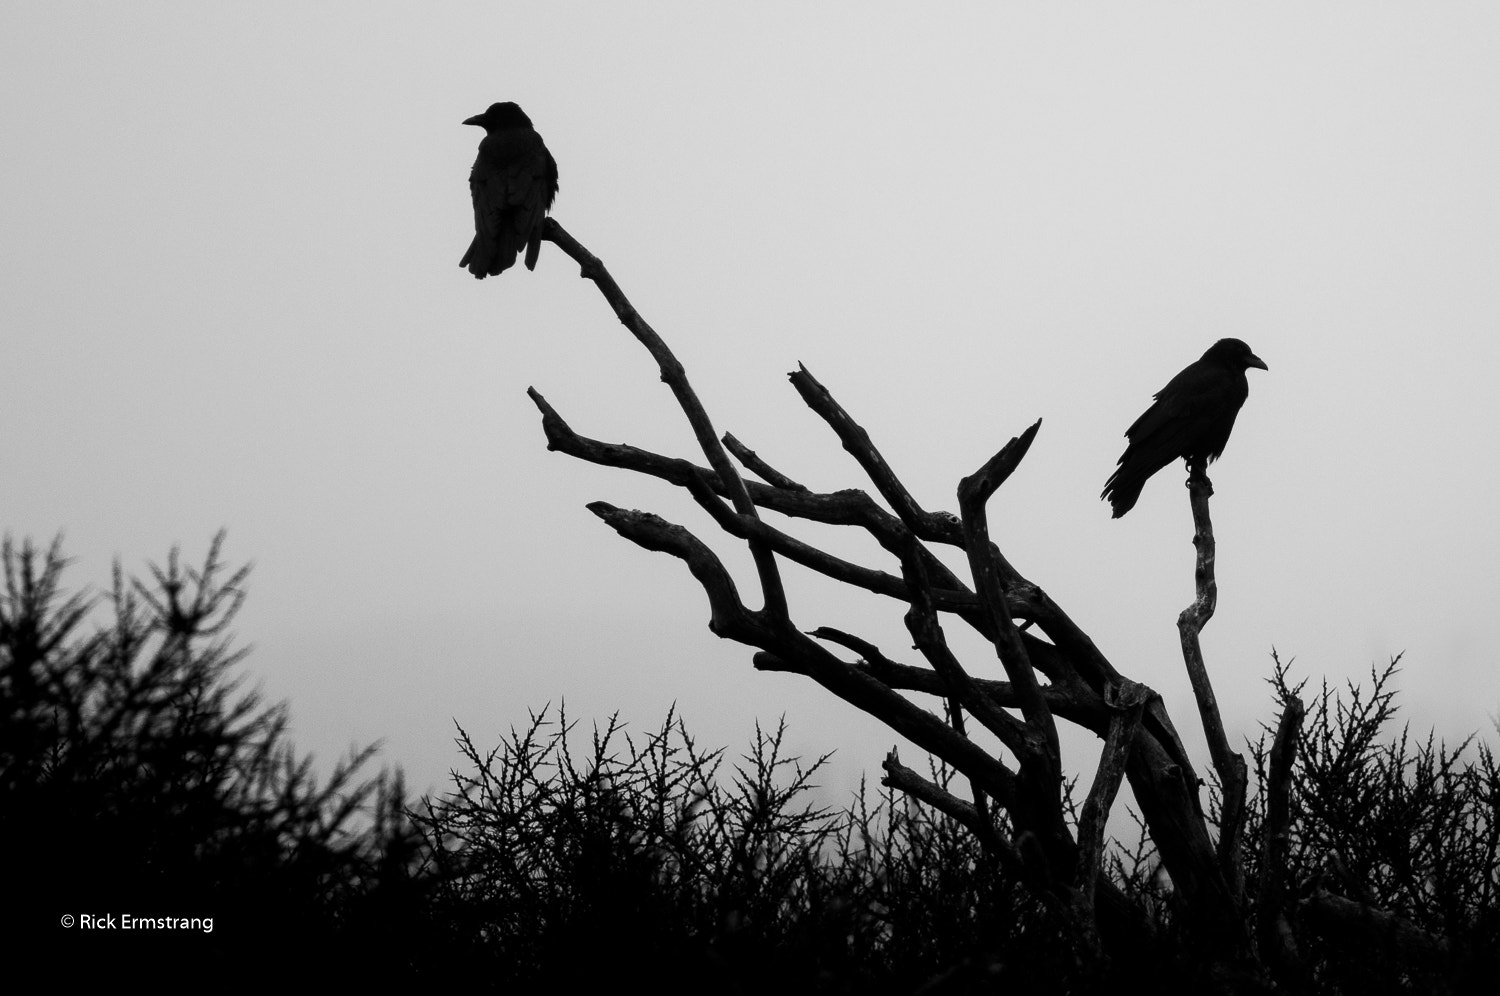 AF Nikkor 180mm f/2.8 IF-ED sample photo. Foggy blackbirds photography